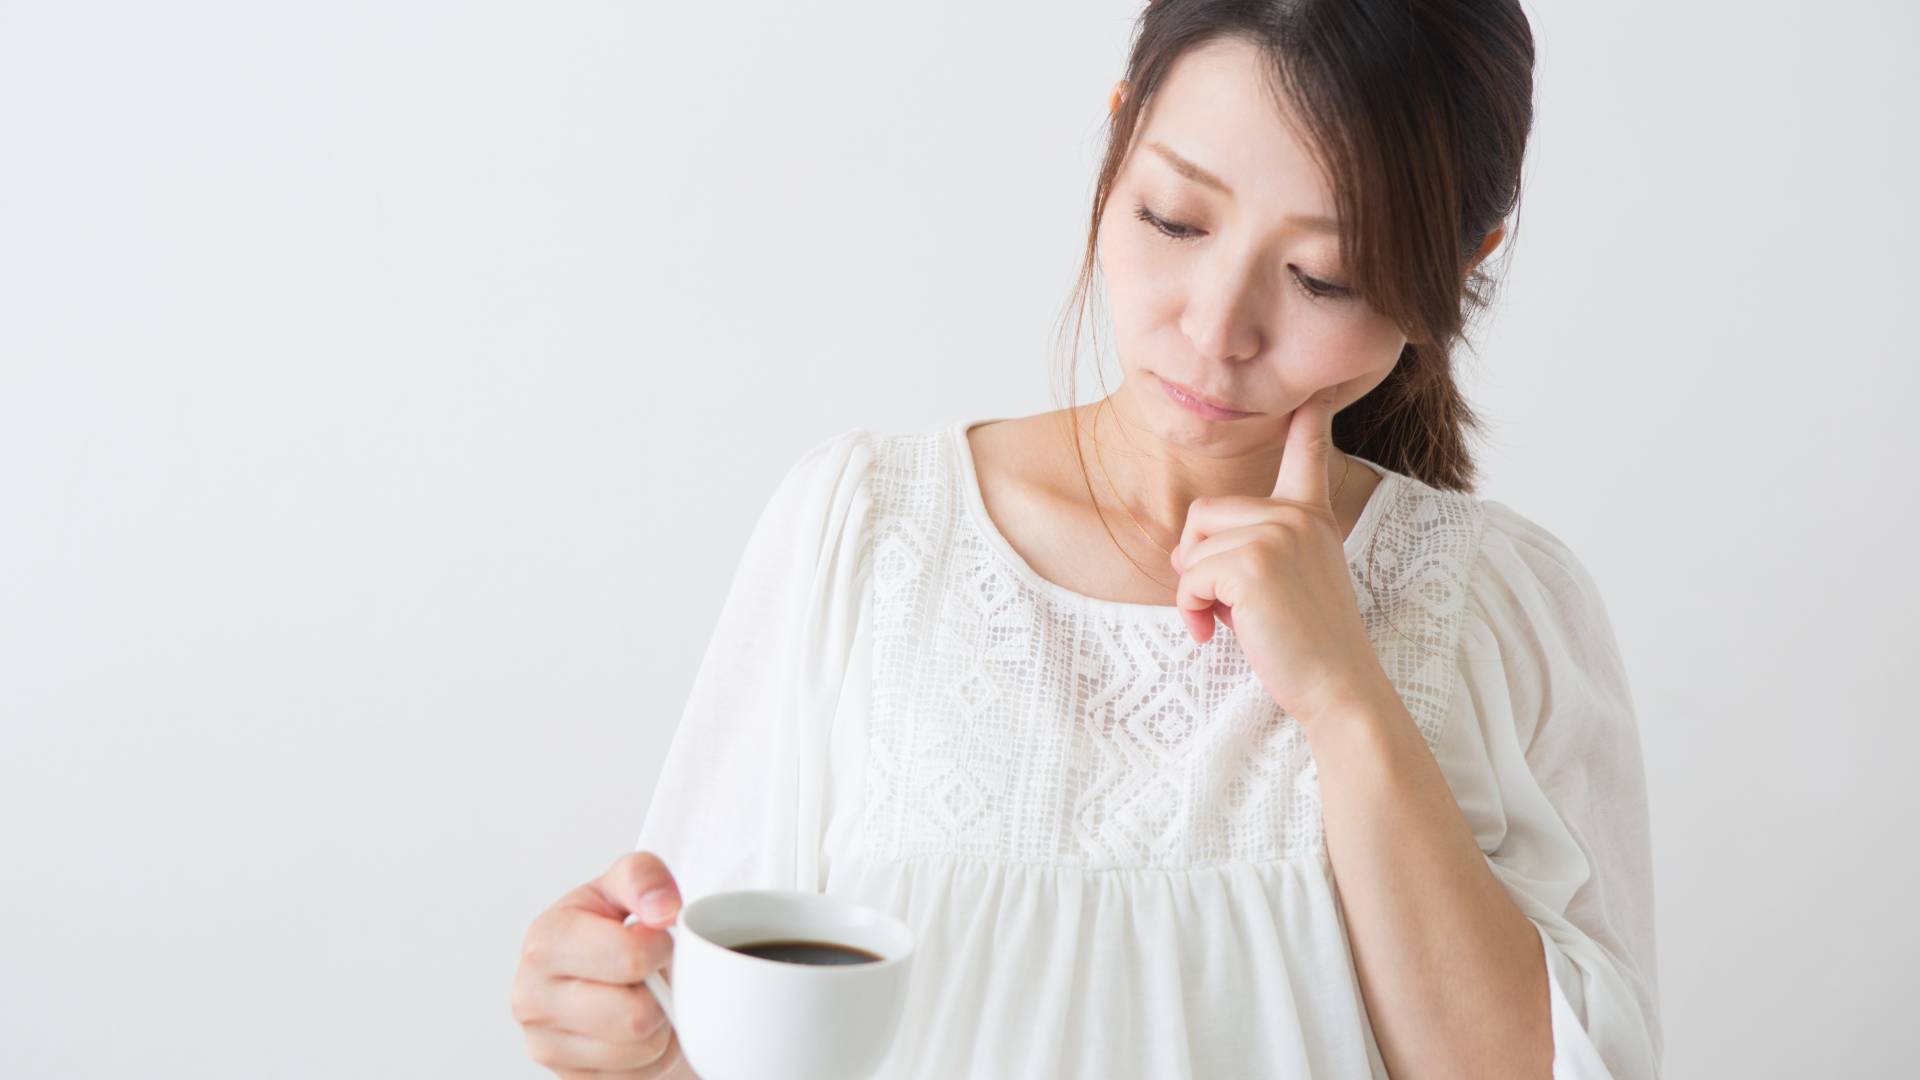 Caffeine: No Safe Amount During Pregnancy